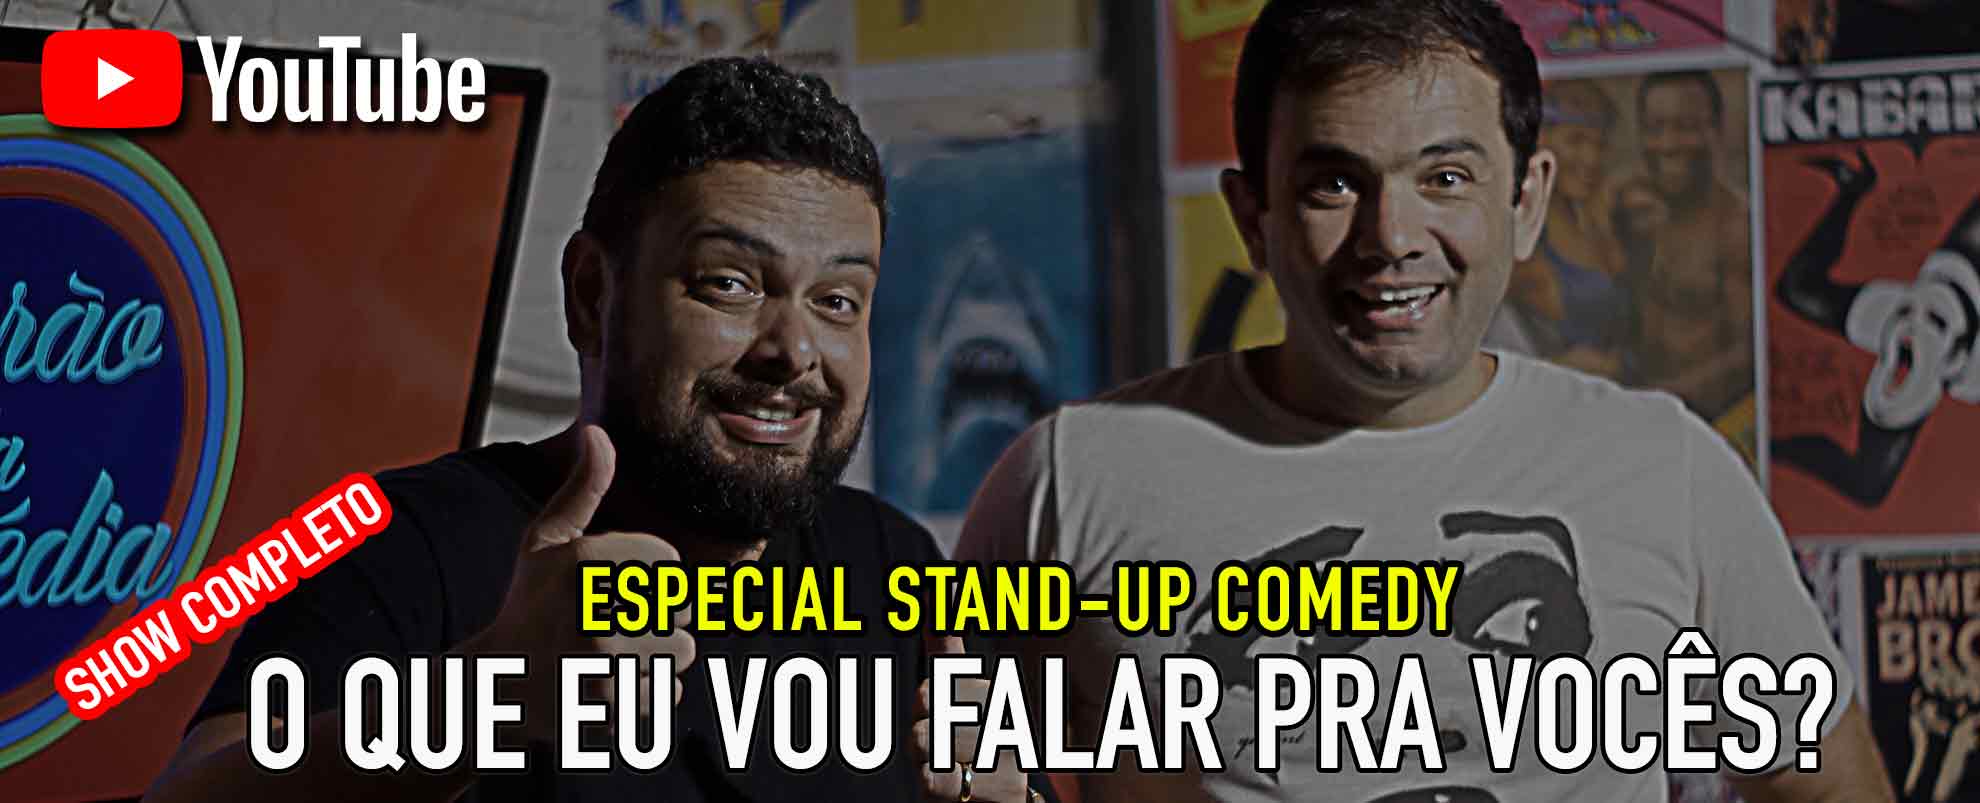 porao-da-comedia-stand-up-comedy-rio-de-janeiro-banner_03-especial-yt